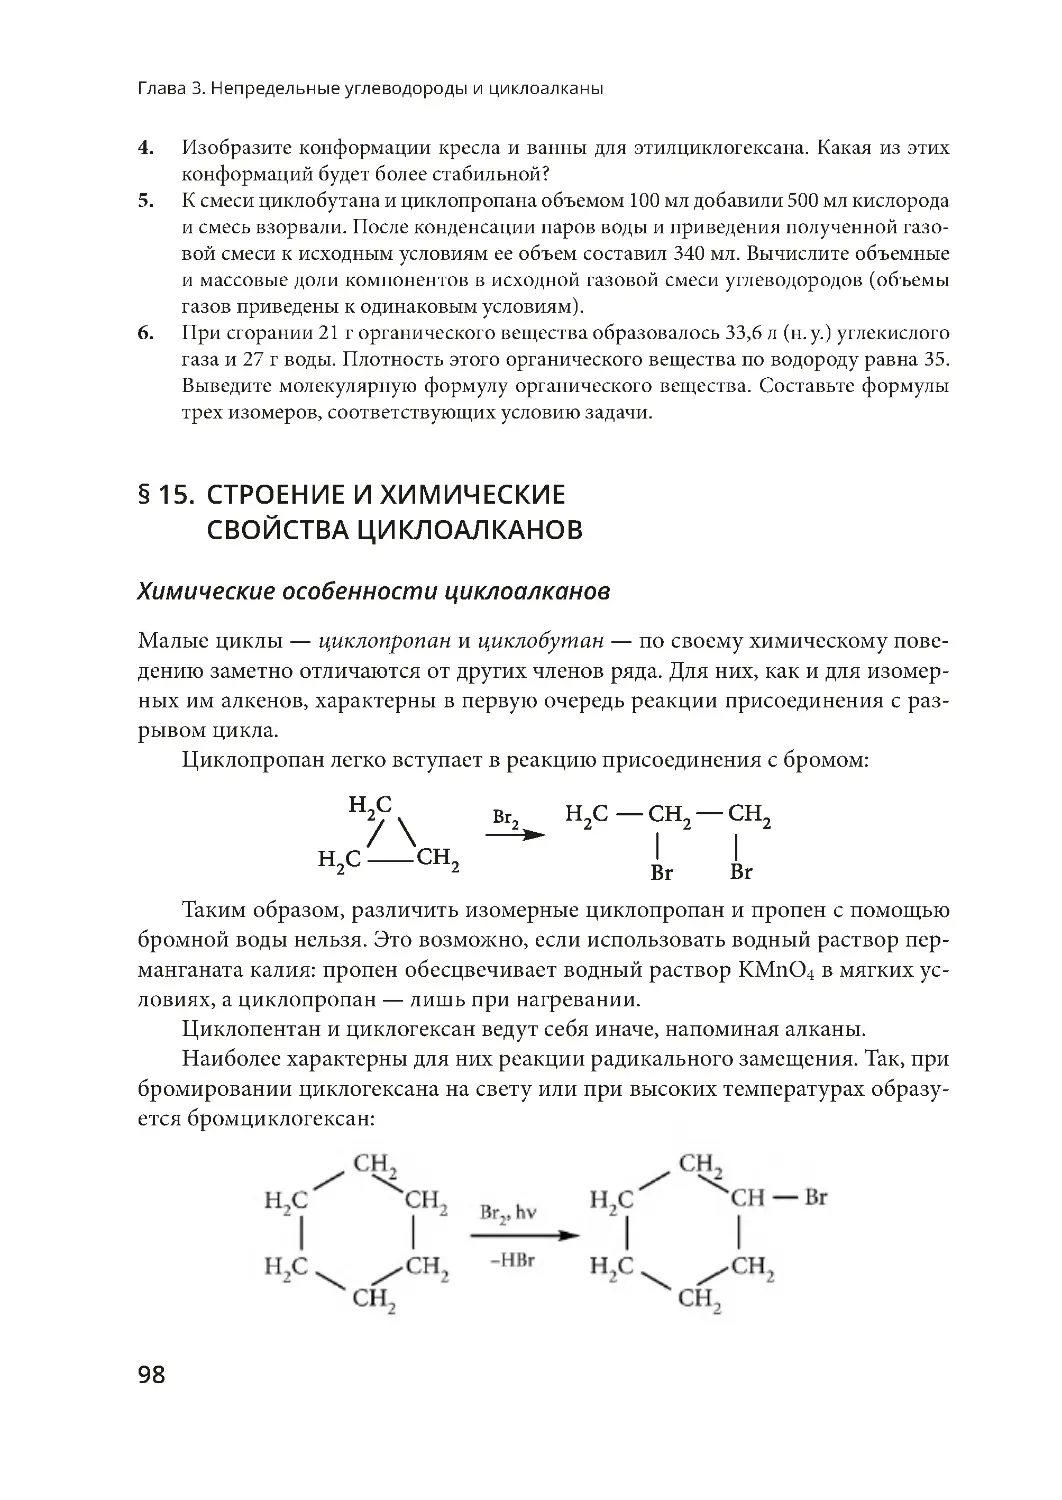 § 15. Строение и химические свойства циклоалканов